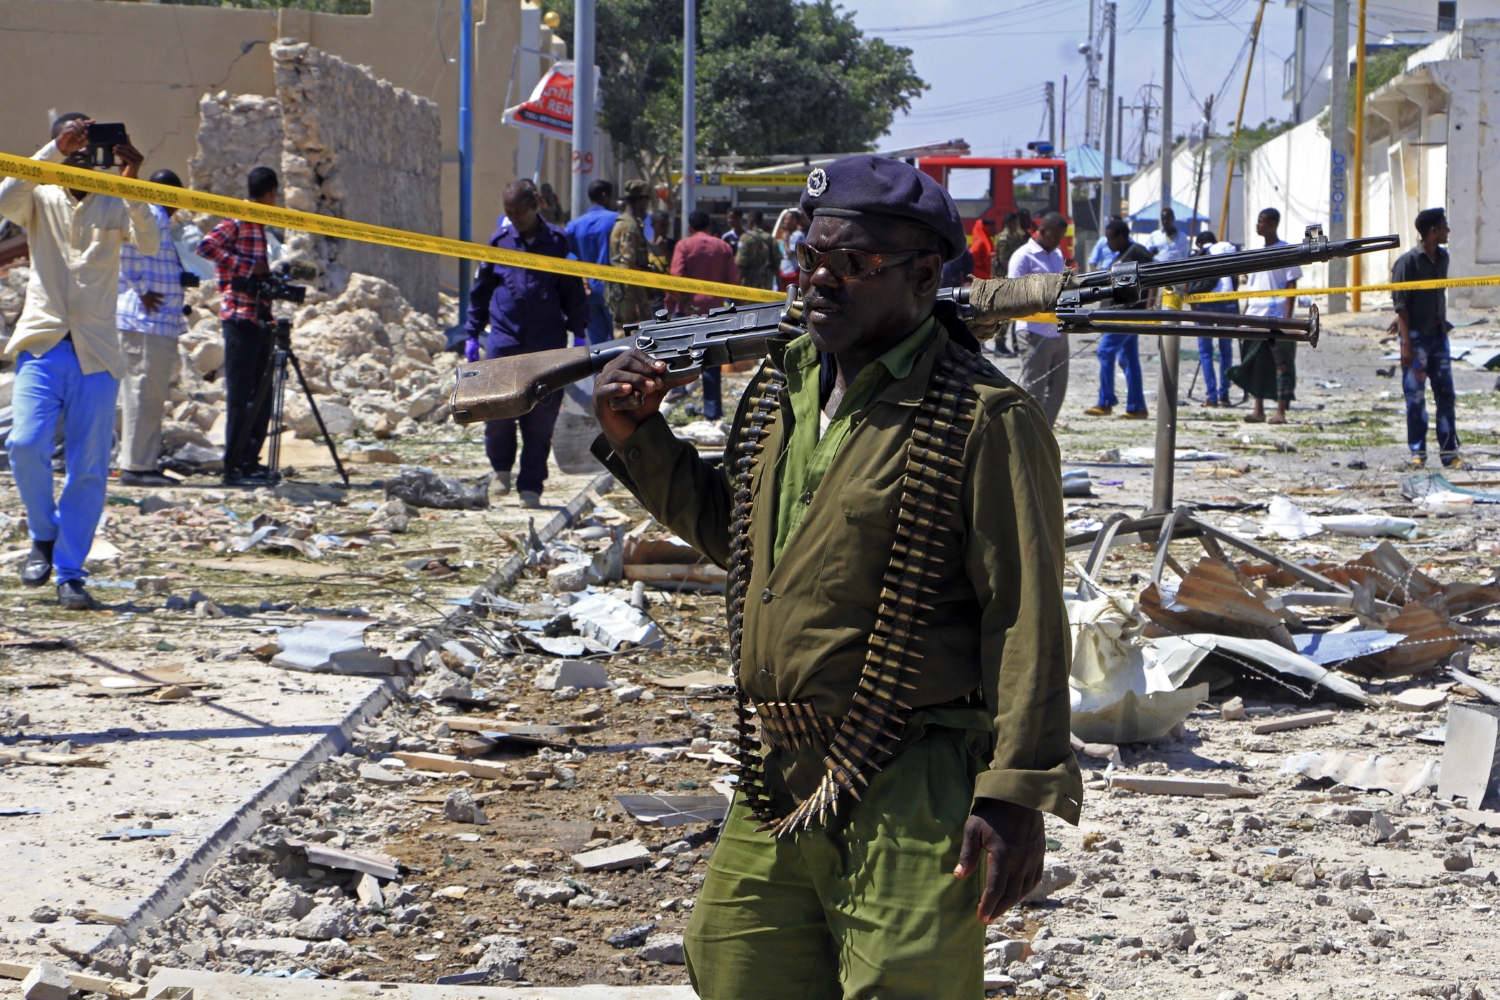 Σομαλία: Αυξάνεται ο αριθμός των νεκρών της βομβιστικής επίθεσης από τζιχανατιστές- 27 νεκροί μέχρι τώρα (βίντεο)